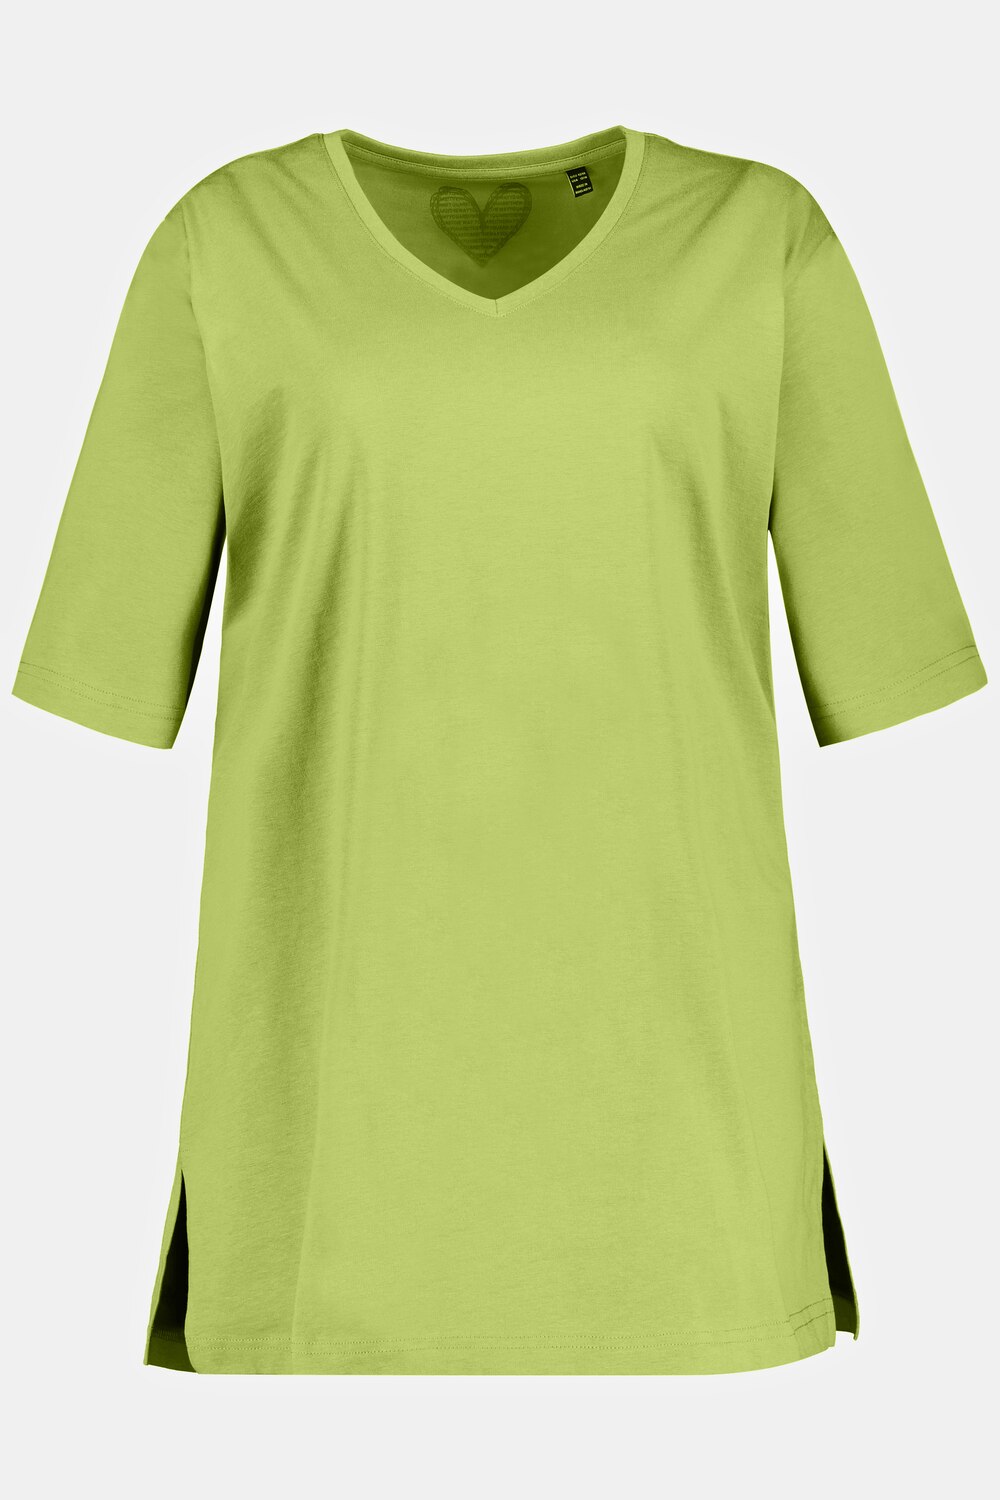 Grote Maten T-shirt, Dames, groen, Maat: 62/64, Ulla Popken